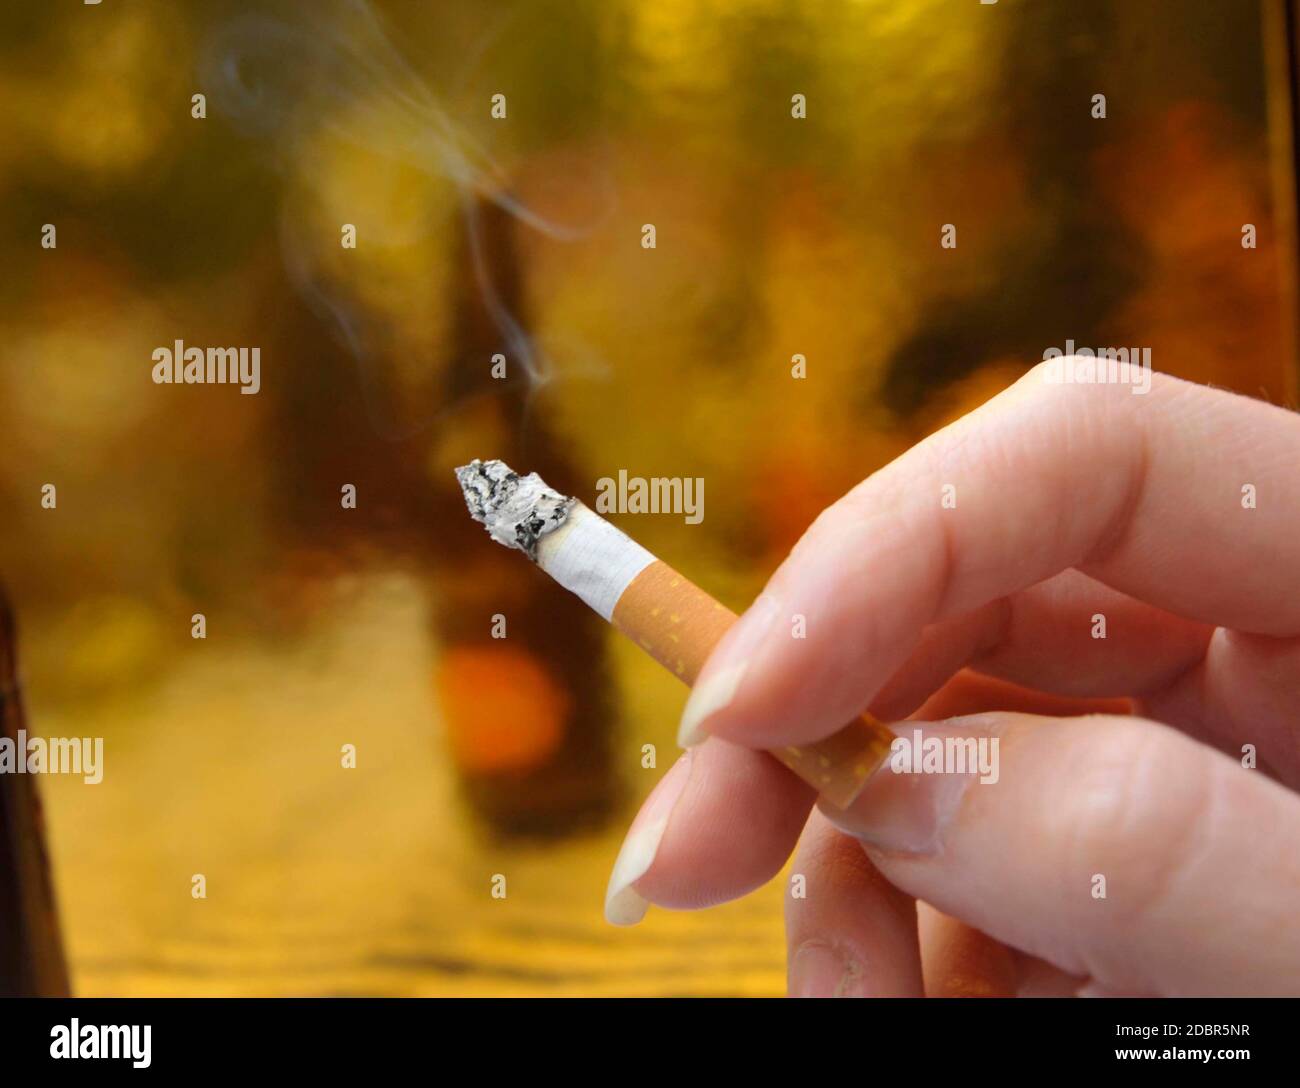 سياره اسعاف يتجاوز يشرب porte studio fumee cigarette protection -  woodridgeapartmentliving.com